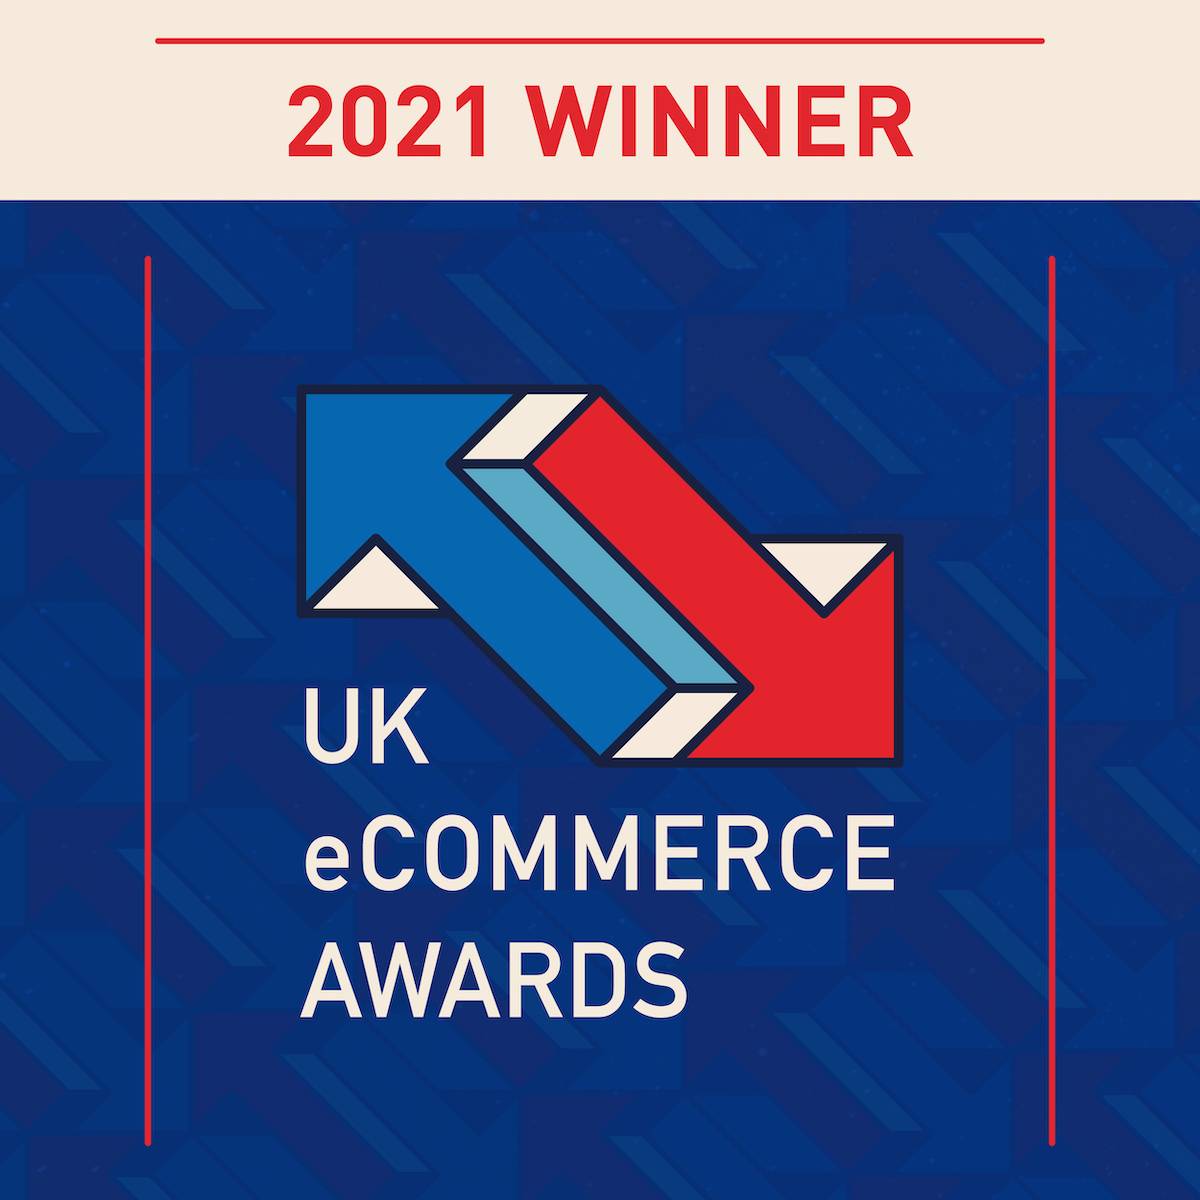 UK eCommerce Awards Winner